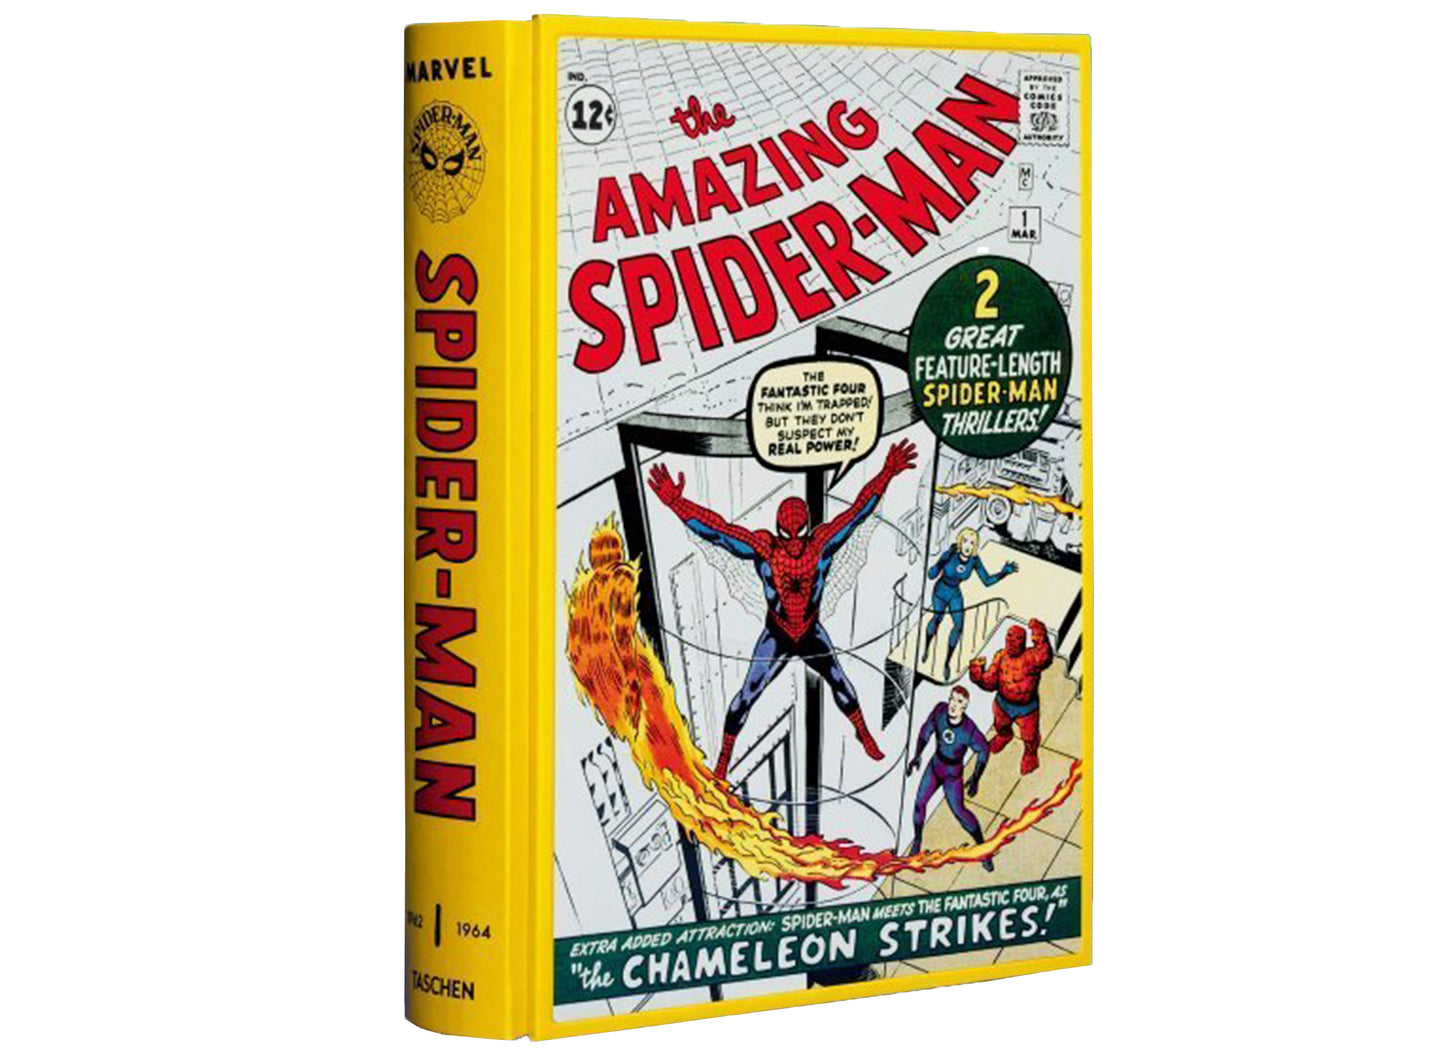 Taschen x Marvel Comics Library Spider-Man Vol. 1. 1962–1964 Book xld